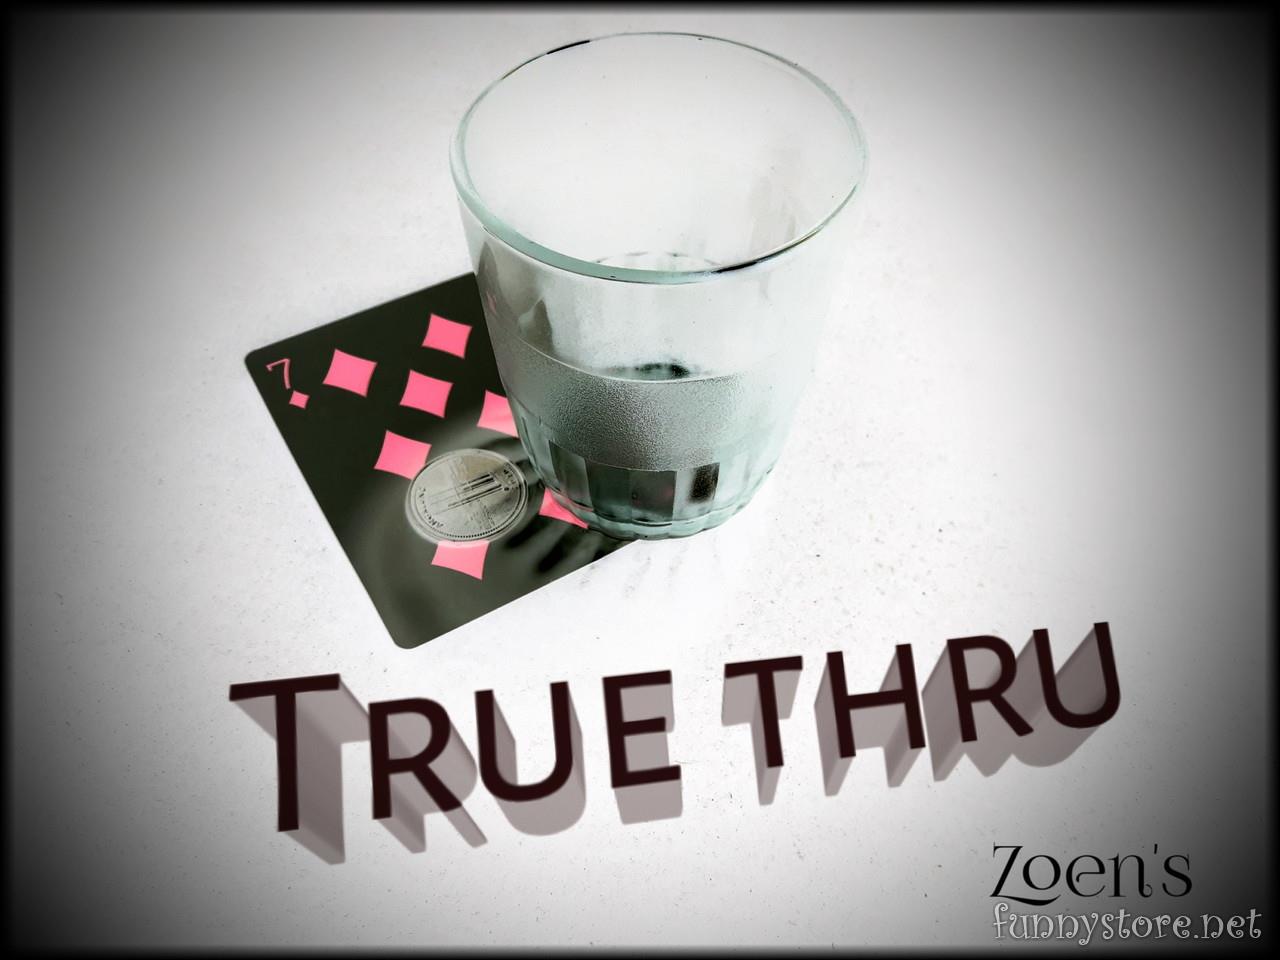 Zoen - True thru